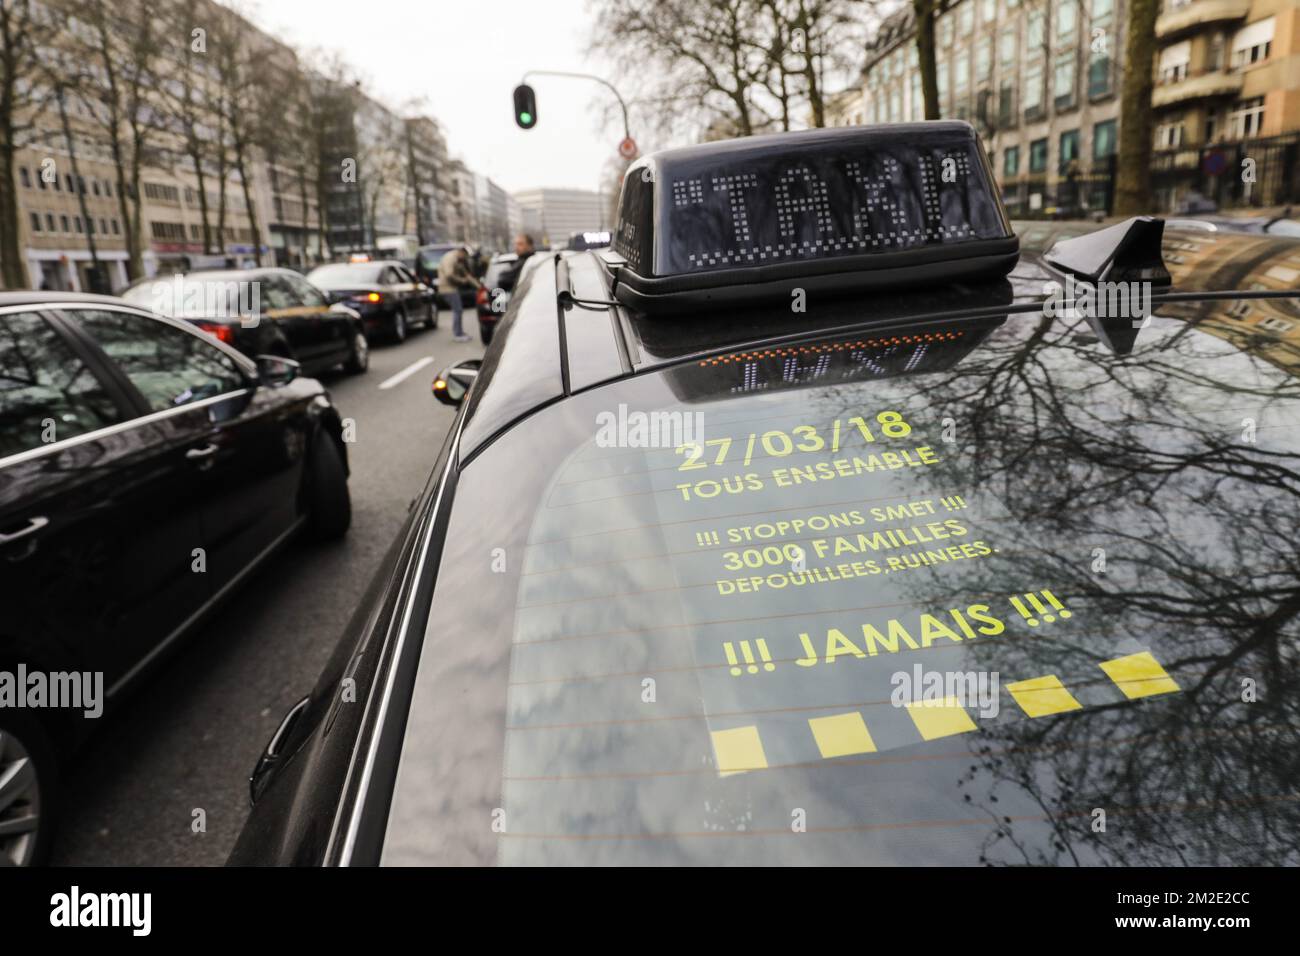 L'illustration montre une action de protestation des chauffeurs de taxi dans le centre-ville de Bruxelles, le mardi 27 mars 2018. BELGA PHOTO THIERRY ROGE Banque D'Images